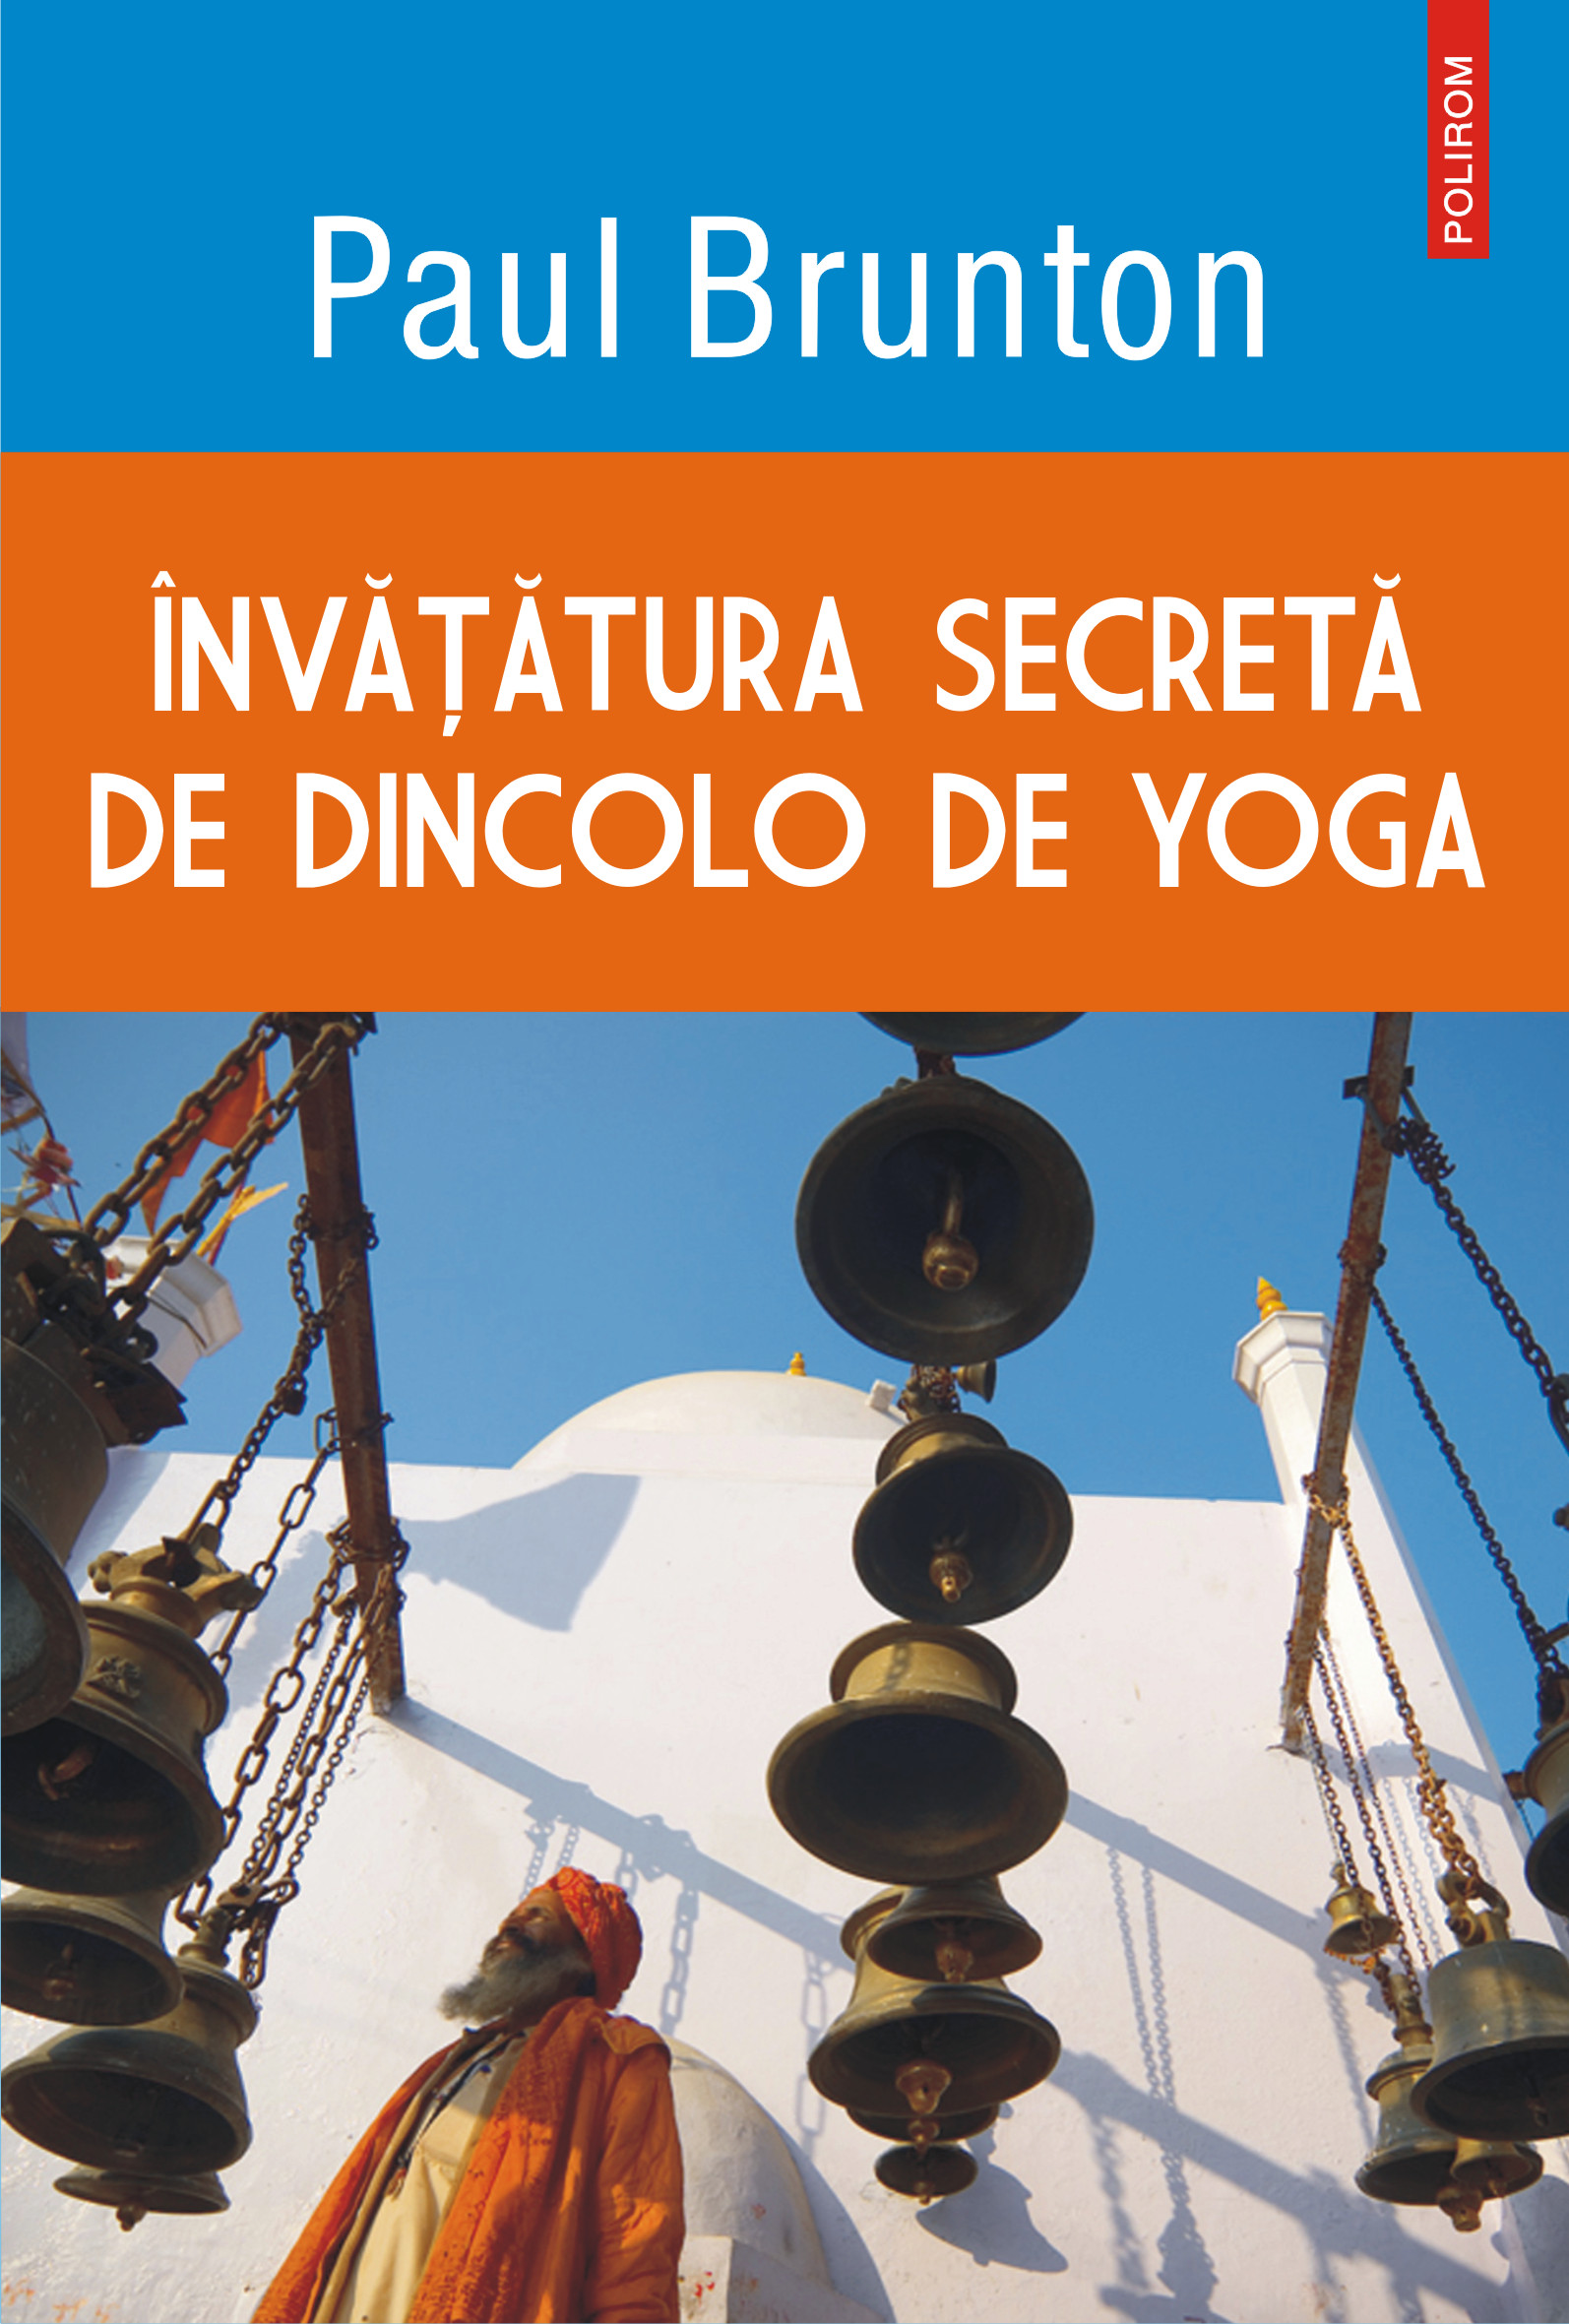 eBook Invatatura secreta de dincolo de yoga - Paul Brunton